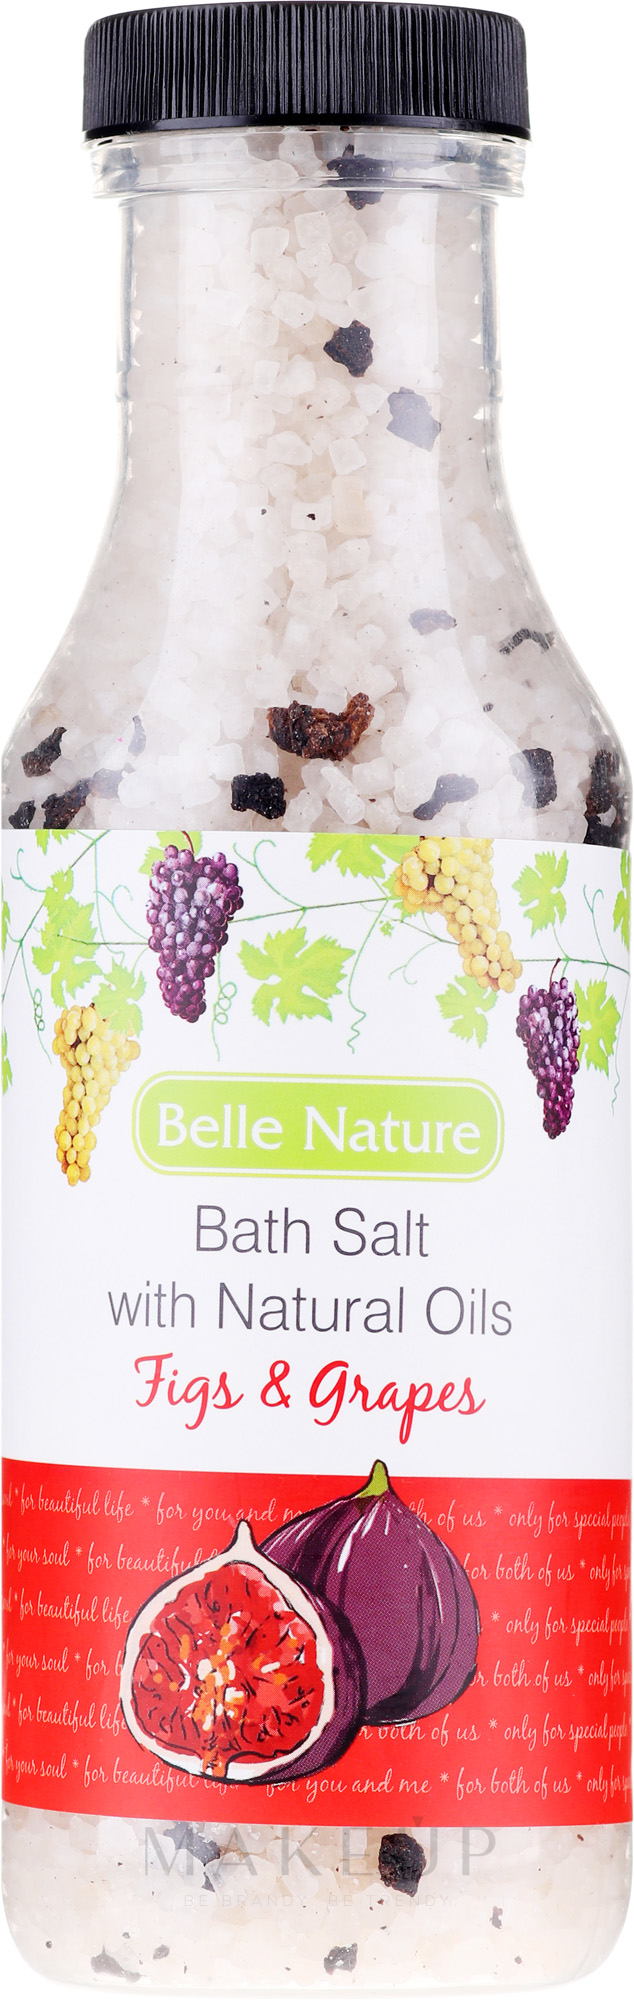 Badesalz Feigen & Trauben - Belle Nature Bath Salt — Bild 380 g